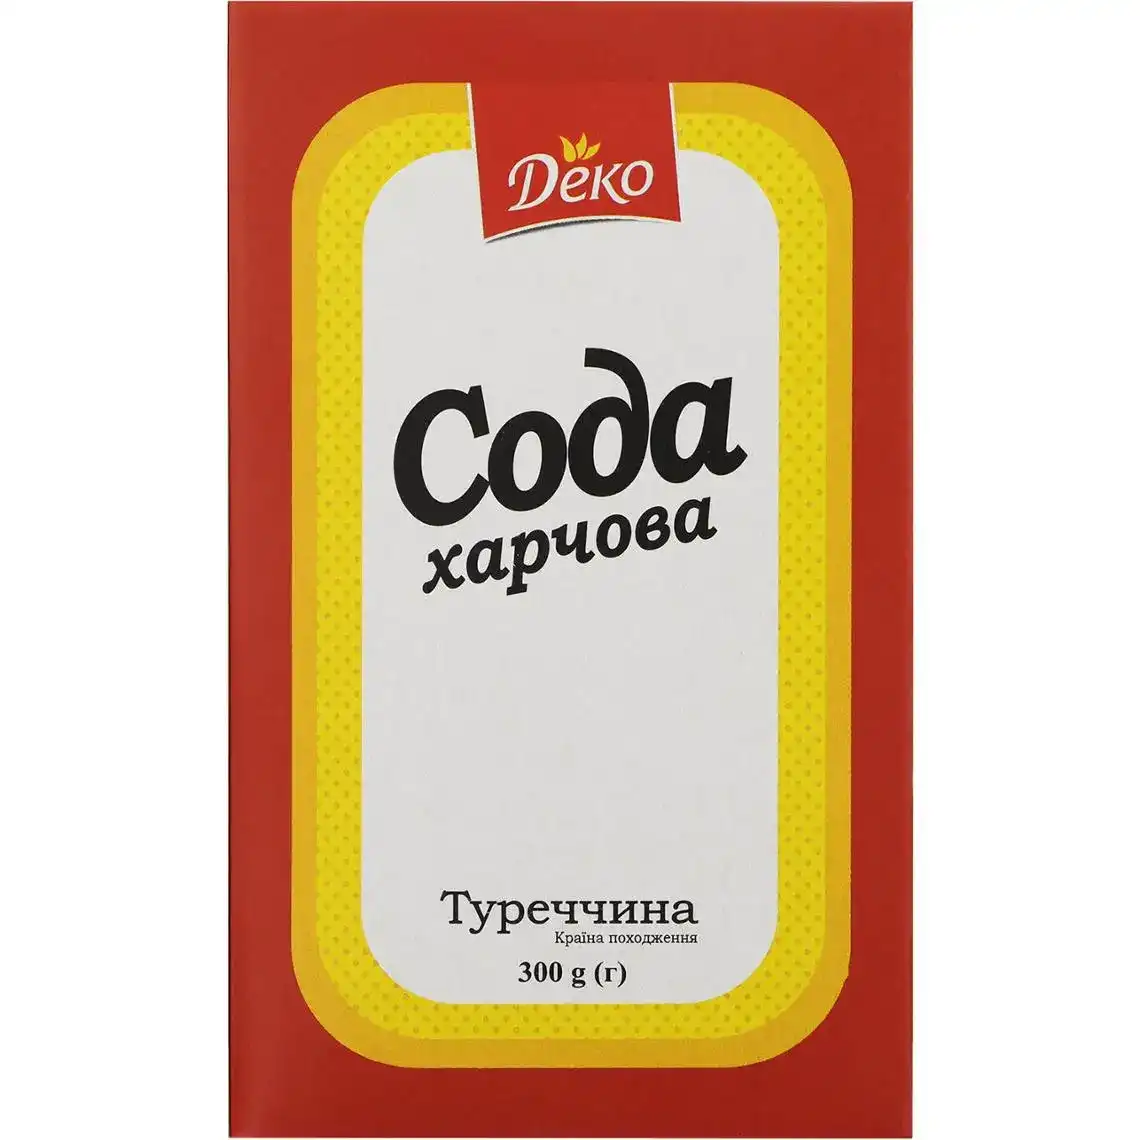 Сода Деко харчова 300 г